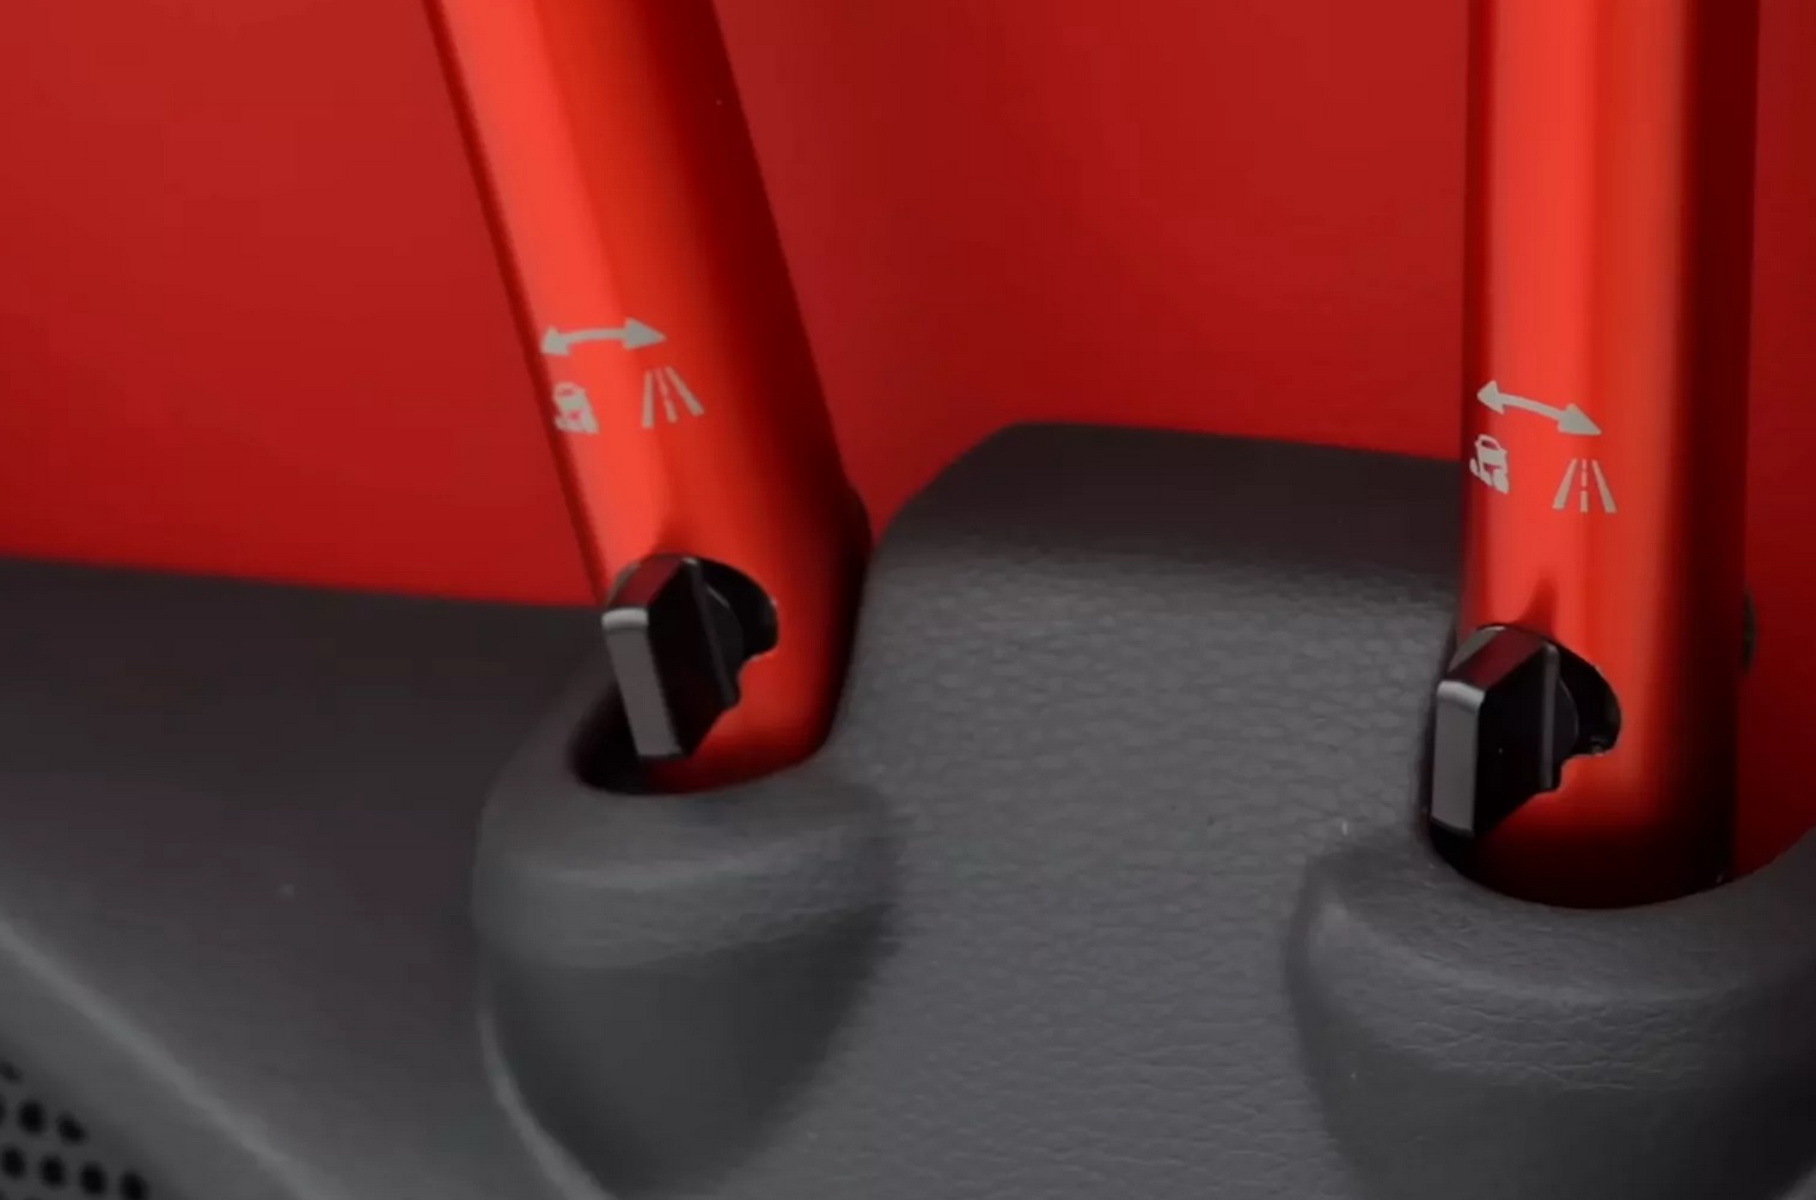 Новая Toyota Tacoma удивила креслами с регулируемыми амортизаторами